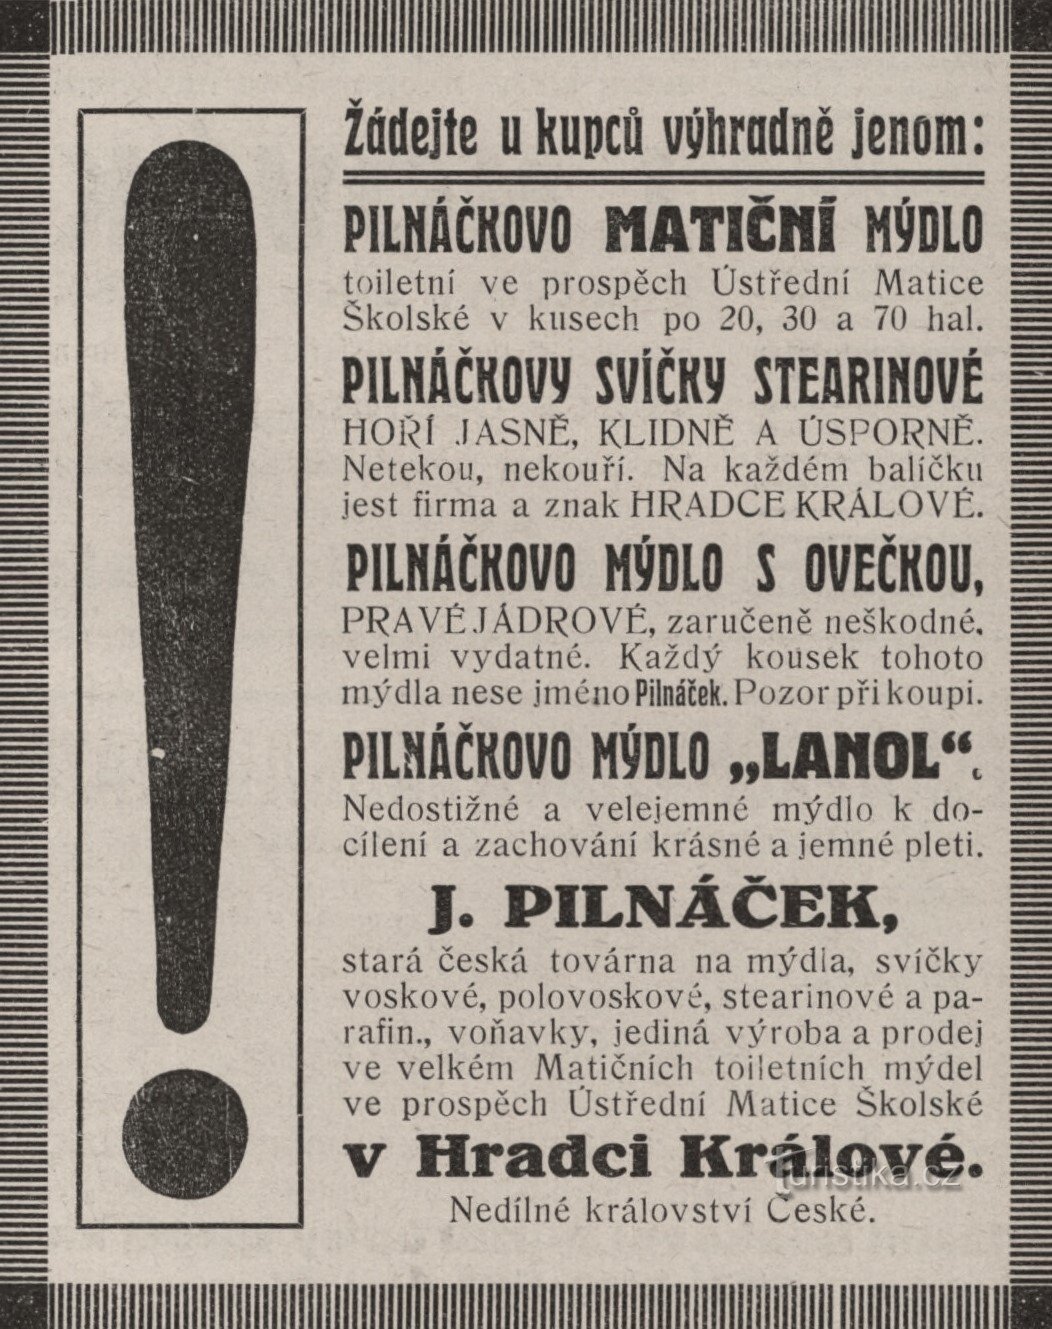 1912 年 Pilnáček 工厂的广告